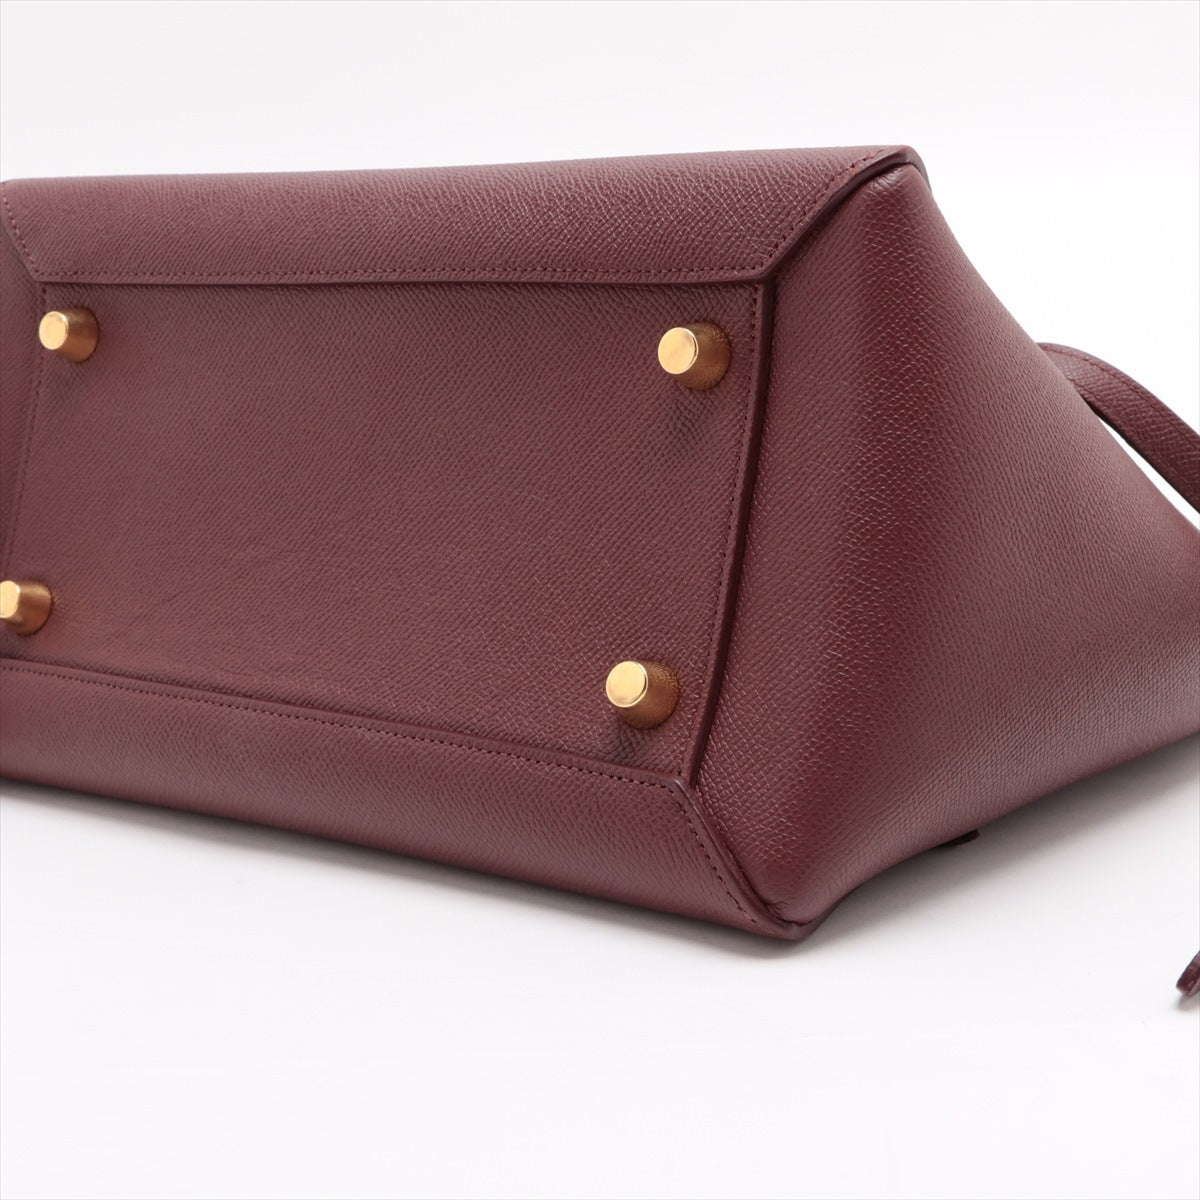 CELINE Belt Bag Leather 2way handbag Bordeaux